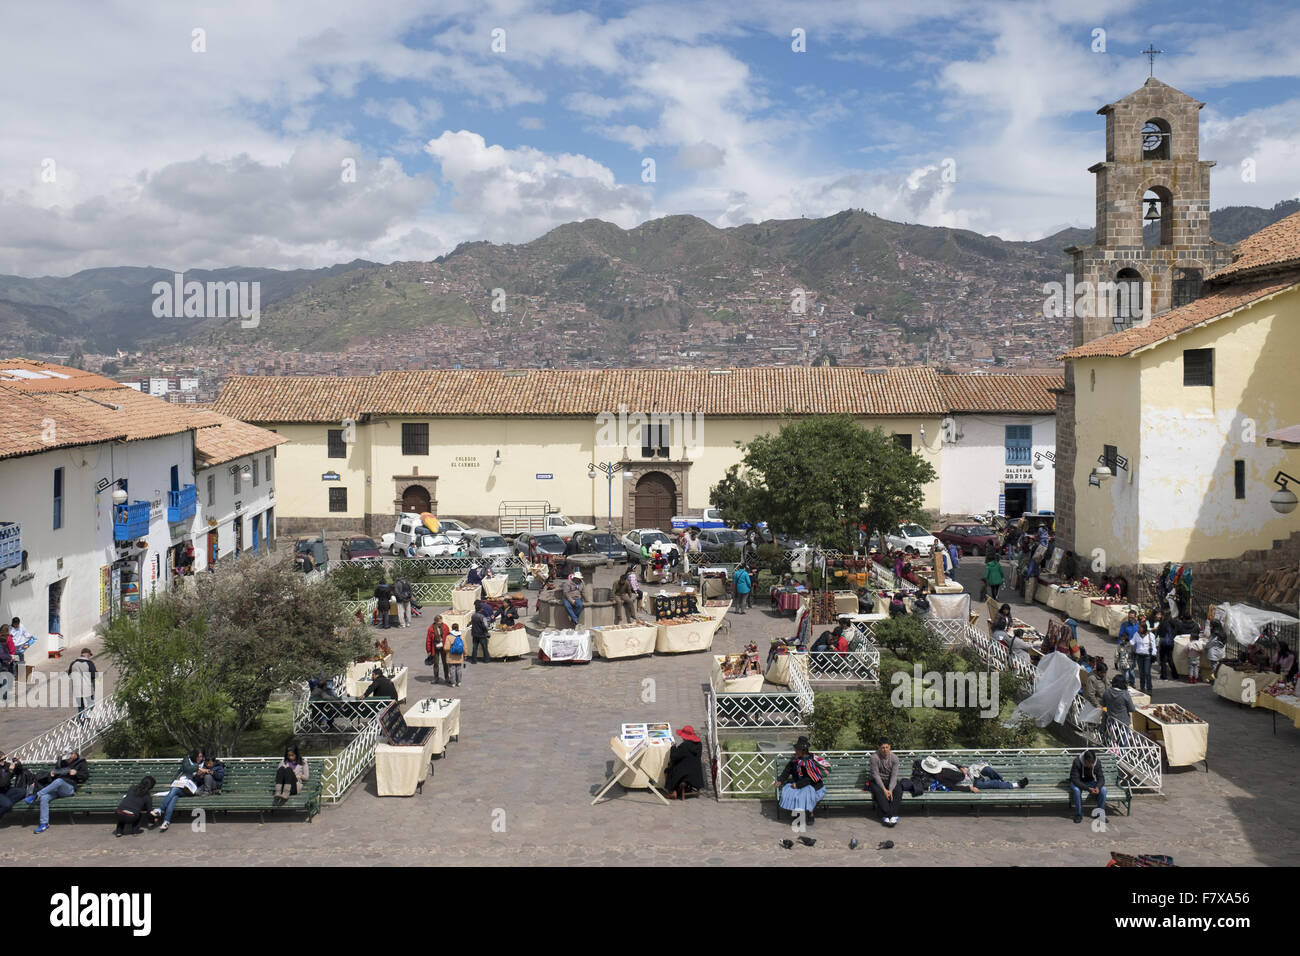 Vendita di artigianato in San Blas square, piazza nel quartiere dello stesso nome, uno dei più luoghi di Boemia a Cuzco. Foto Stock